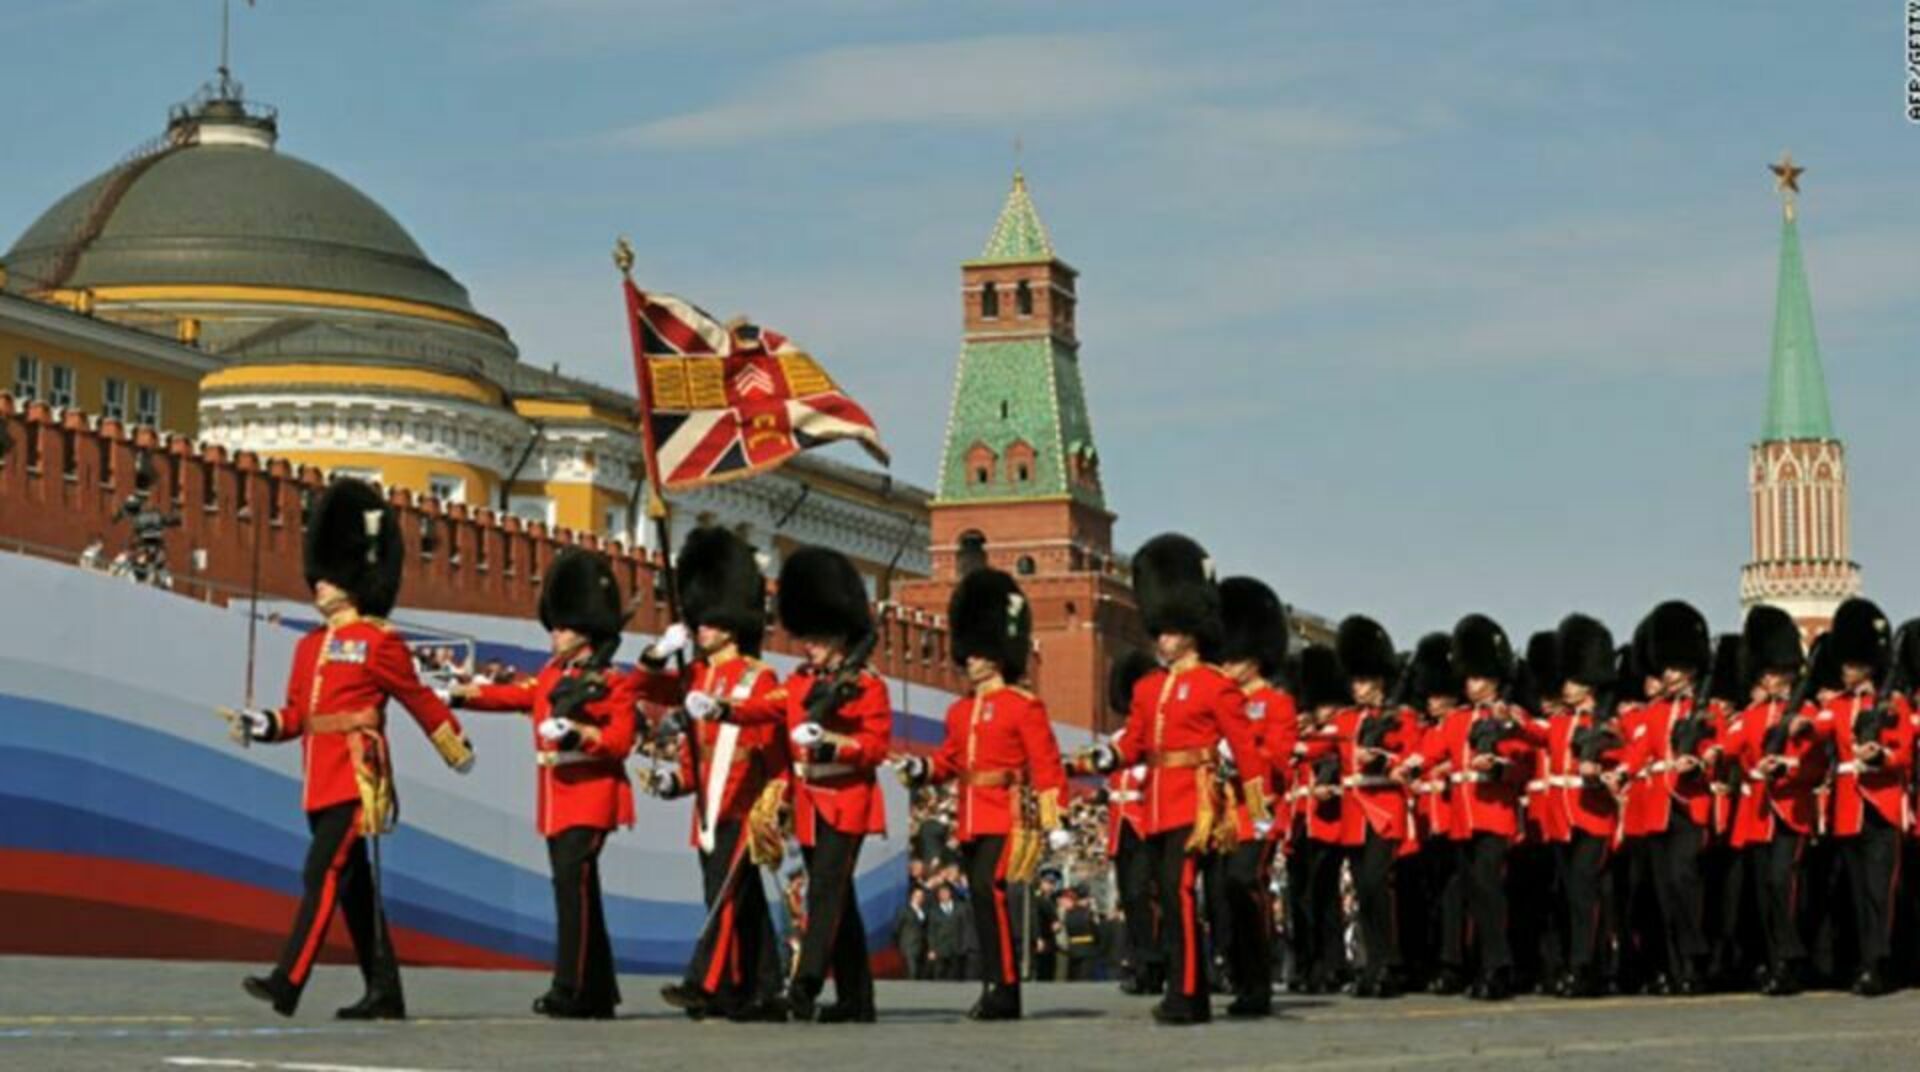 8 9 мая москва. Парад Победы 2010 года на красной площади. Парад на красной площади 9 мая 2010 года. Войска НАТО на красной площади парад. Американцы на параде Победы в Москве 2010.